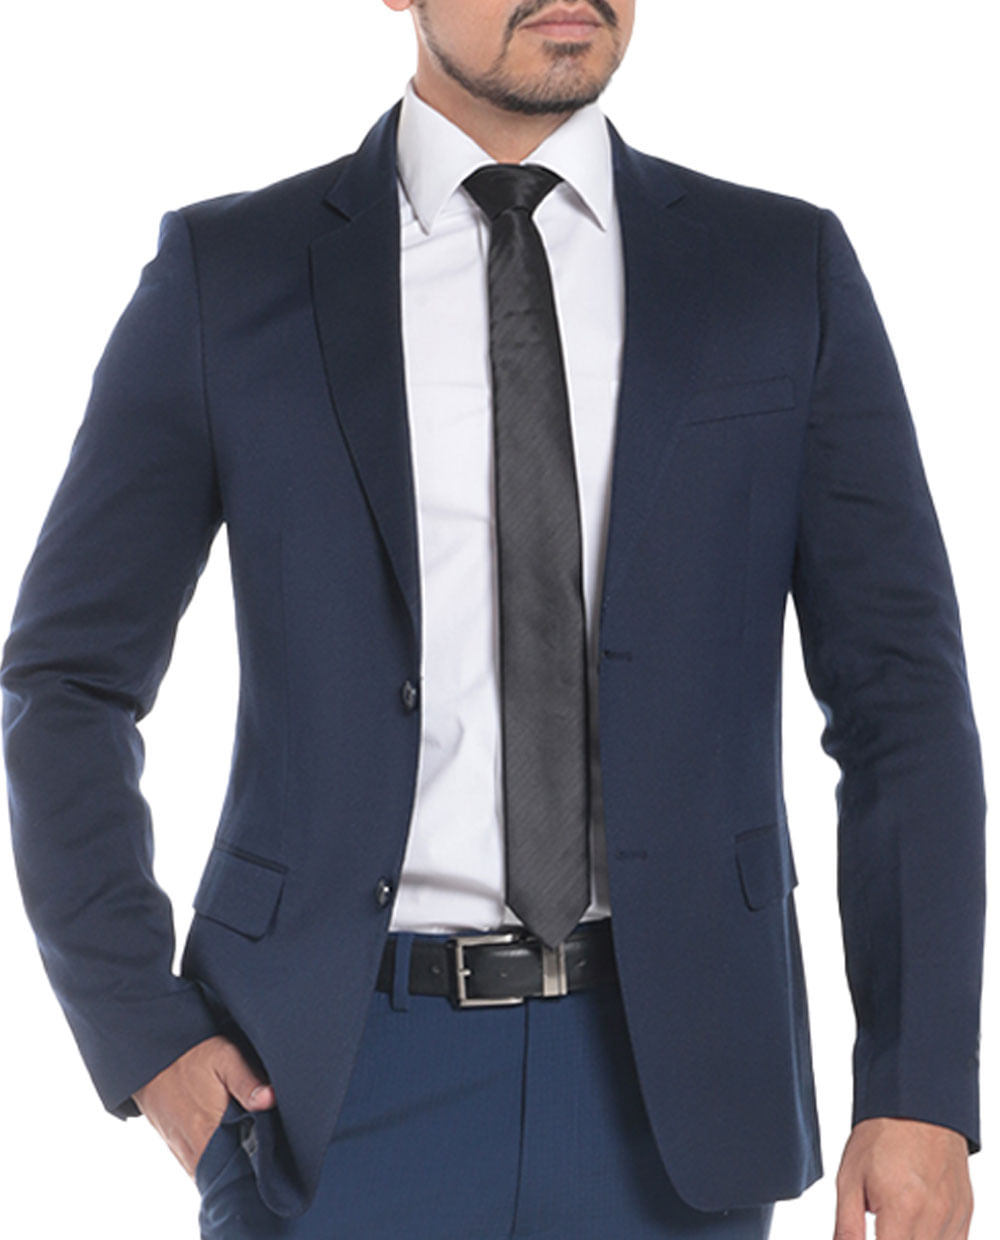 Promoción blazer-hombre-juvenil, blazer-hombre-juvenil a la venta, blazer- hombre-juvenil promocional